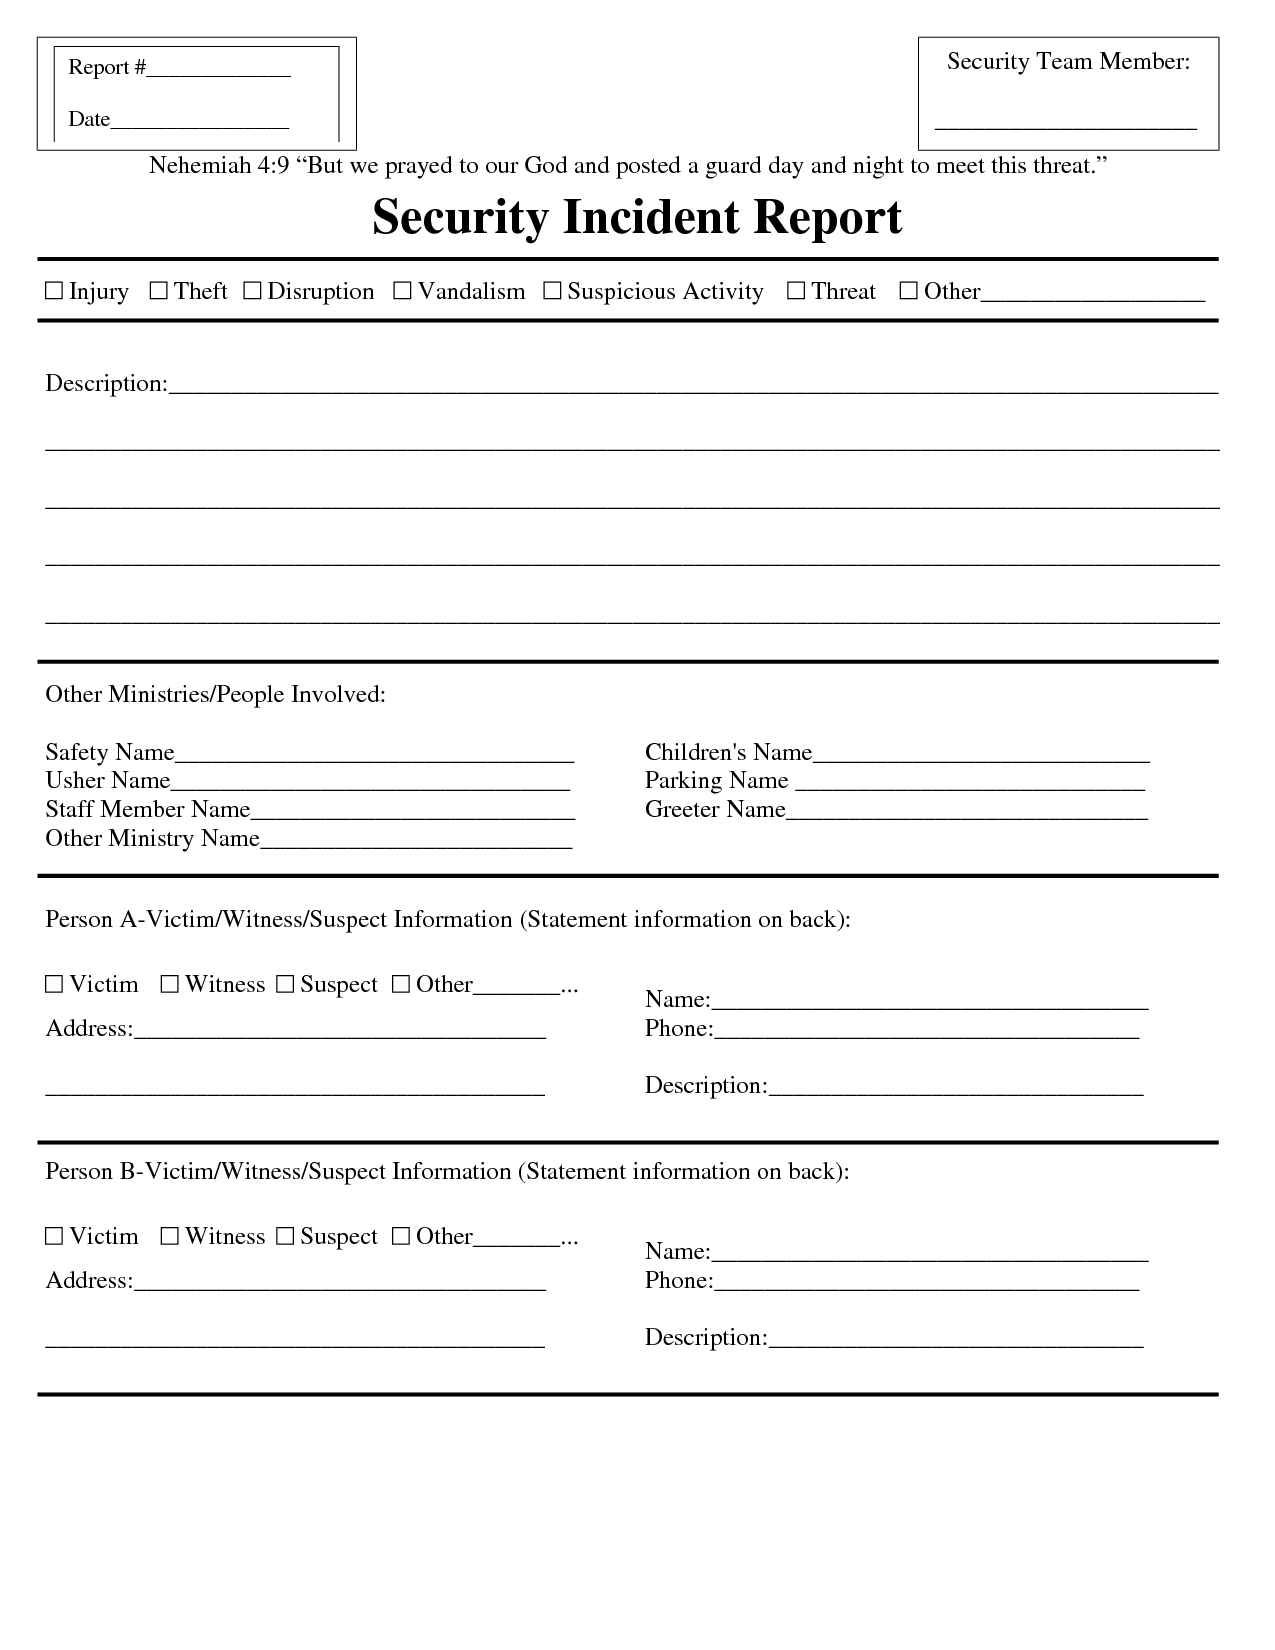 Premium Blank Security Incident Report Template Sample With Incident Report Template Microsoft